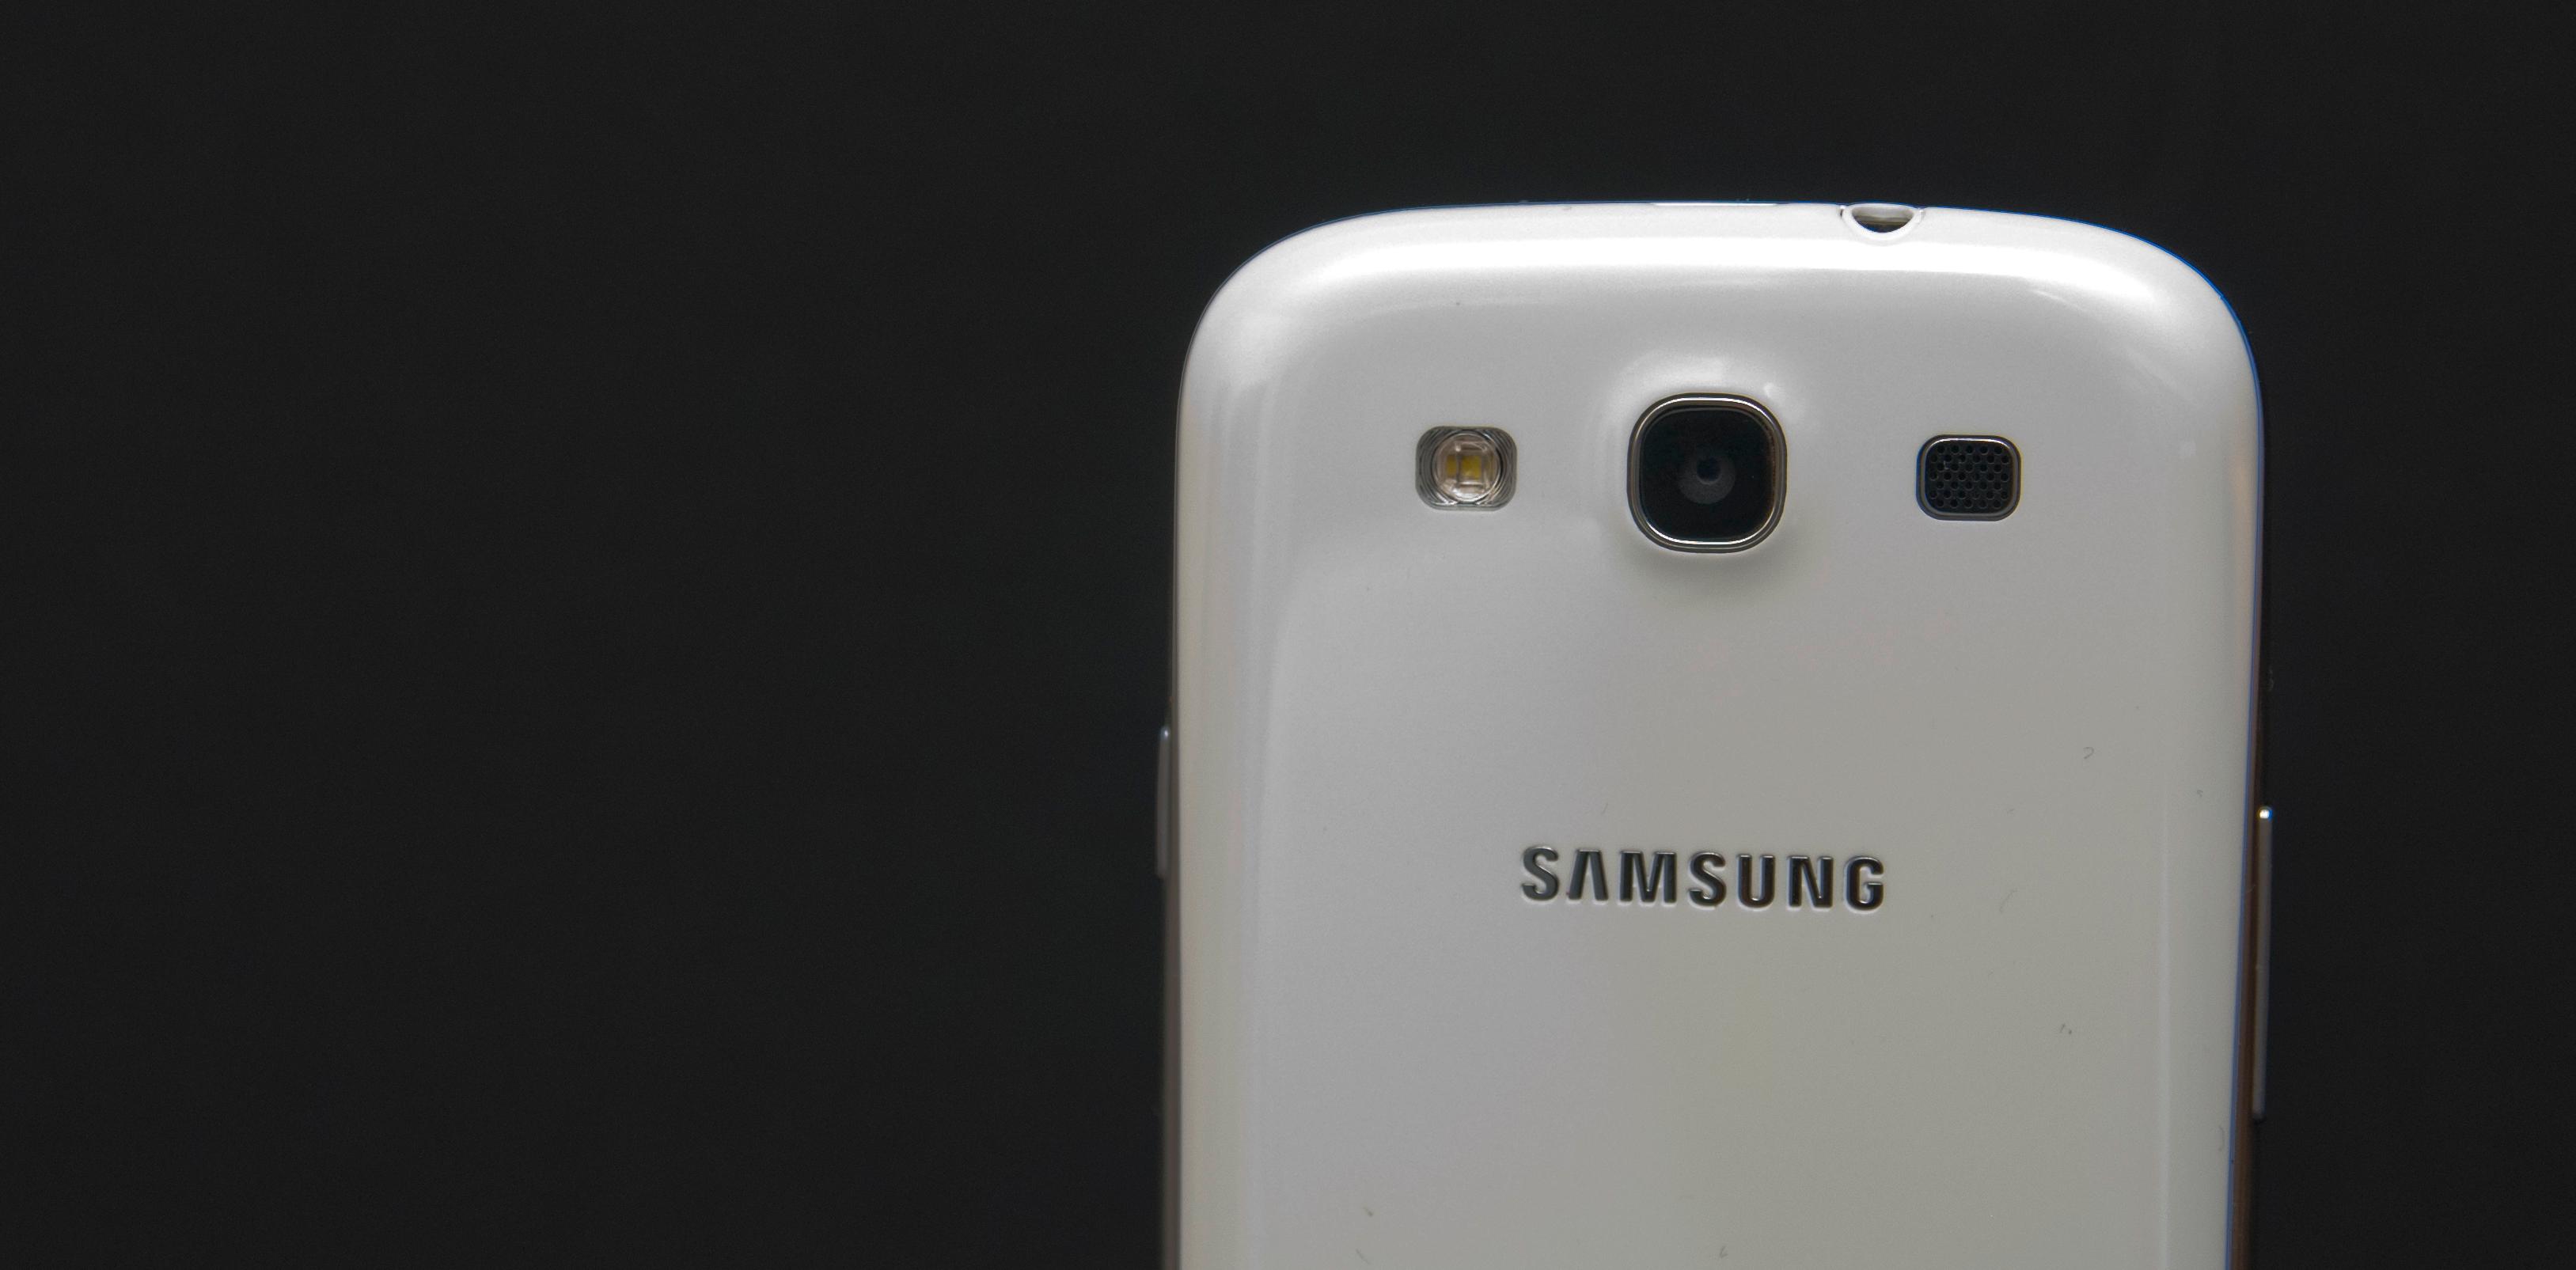 Vi brukte i hovedsak Samsung Galaxy S III under testingen av ørepropper med mobiltelefon. Underveis i testen tok vi stikkprøver med HTC One X og Apple iPhone 4S.